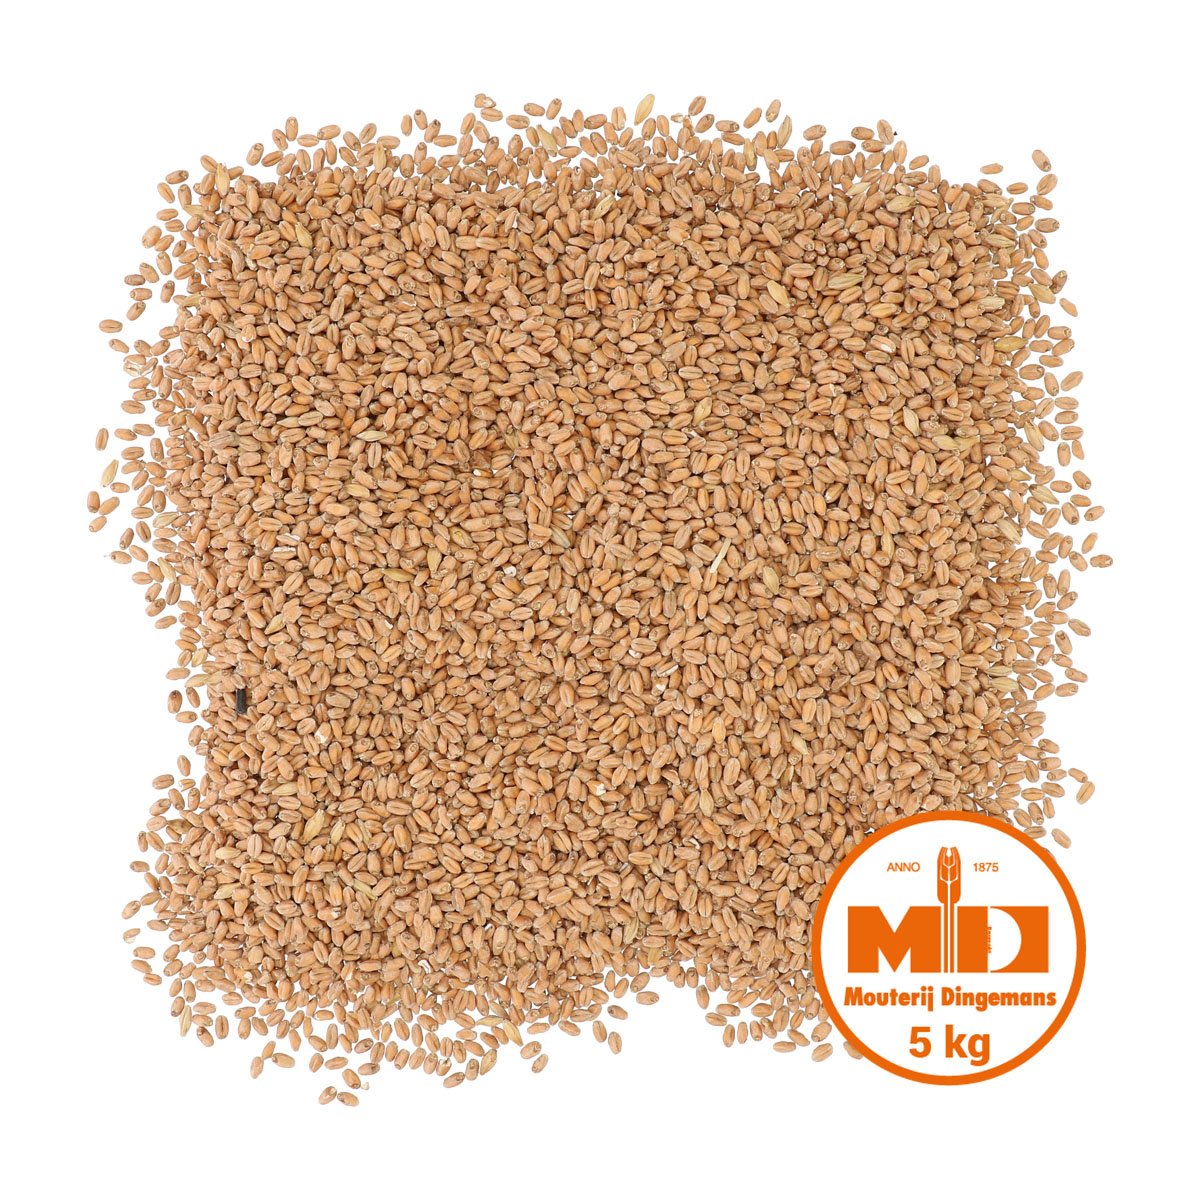 Dingemans Mroost  Wheat MD™ malt 25 kg